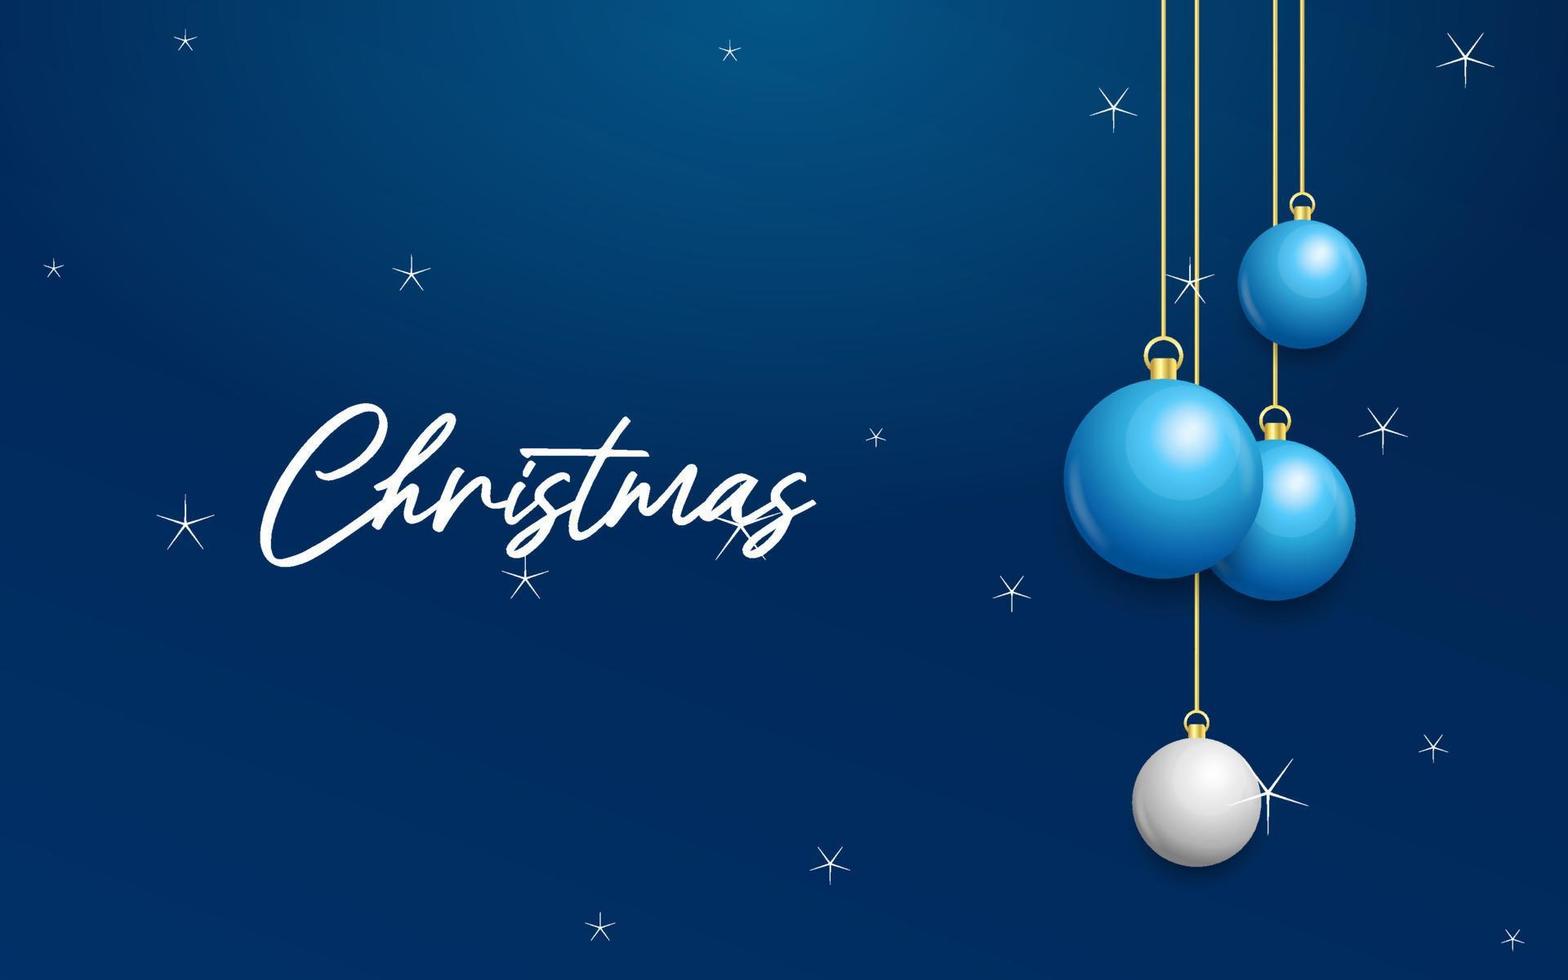 fundo azul de natal com bolas brancas e prateadas brilhantes penduradas. cartão de feliz natal vetor